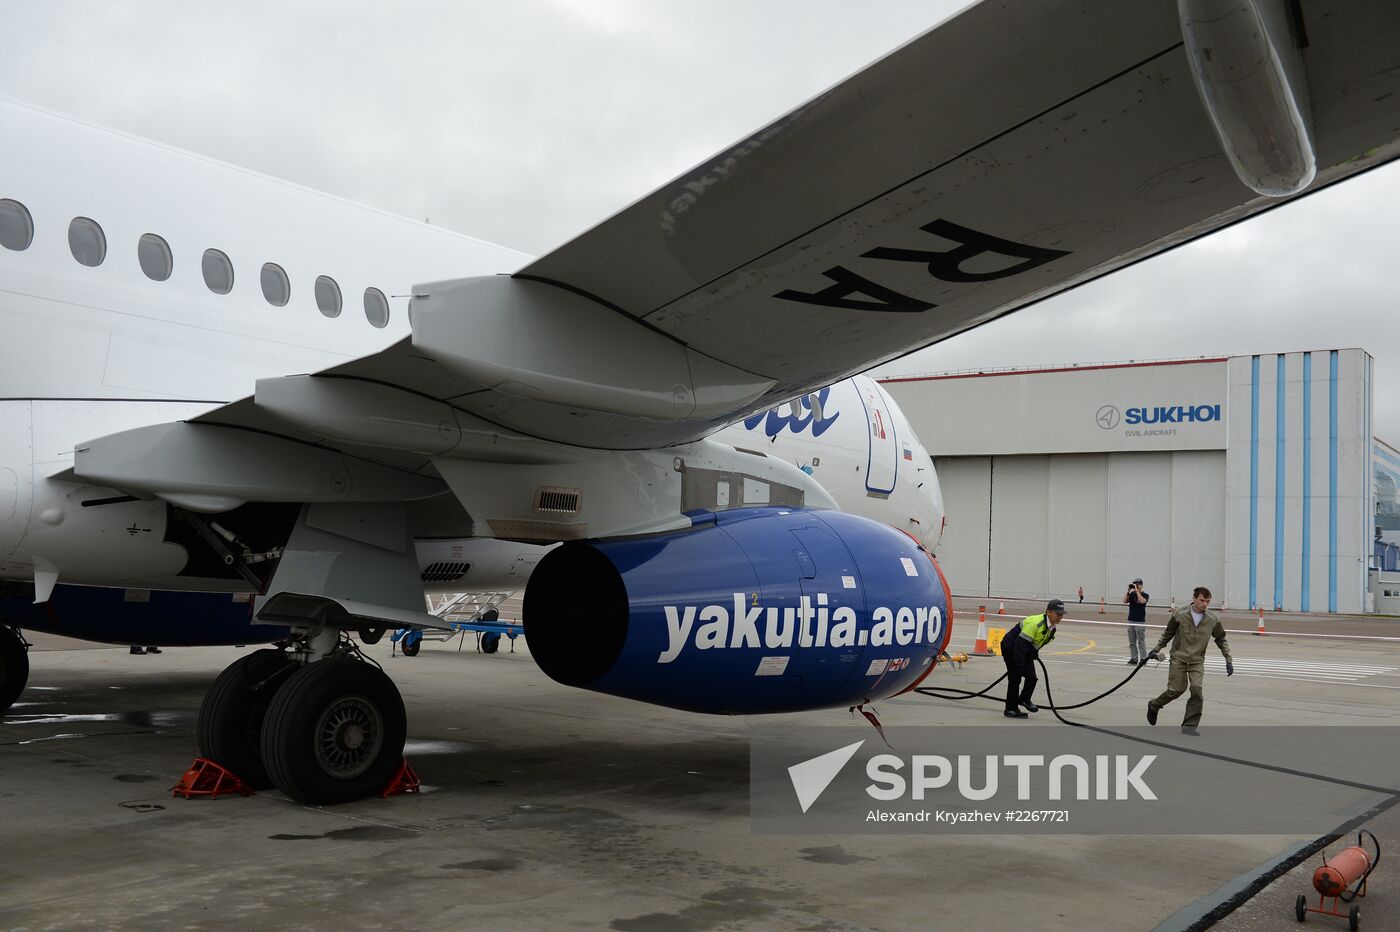 Assembly of Sukhoi Superjet airliners in Komsomolsk-on-Amur